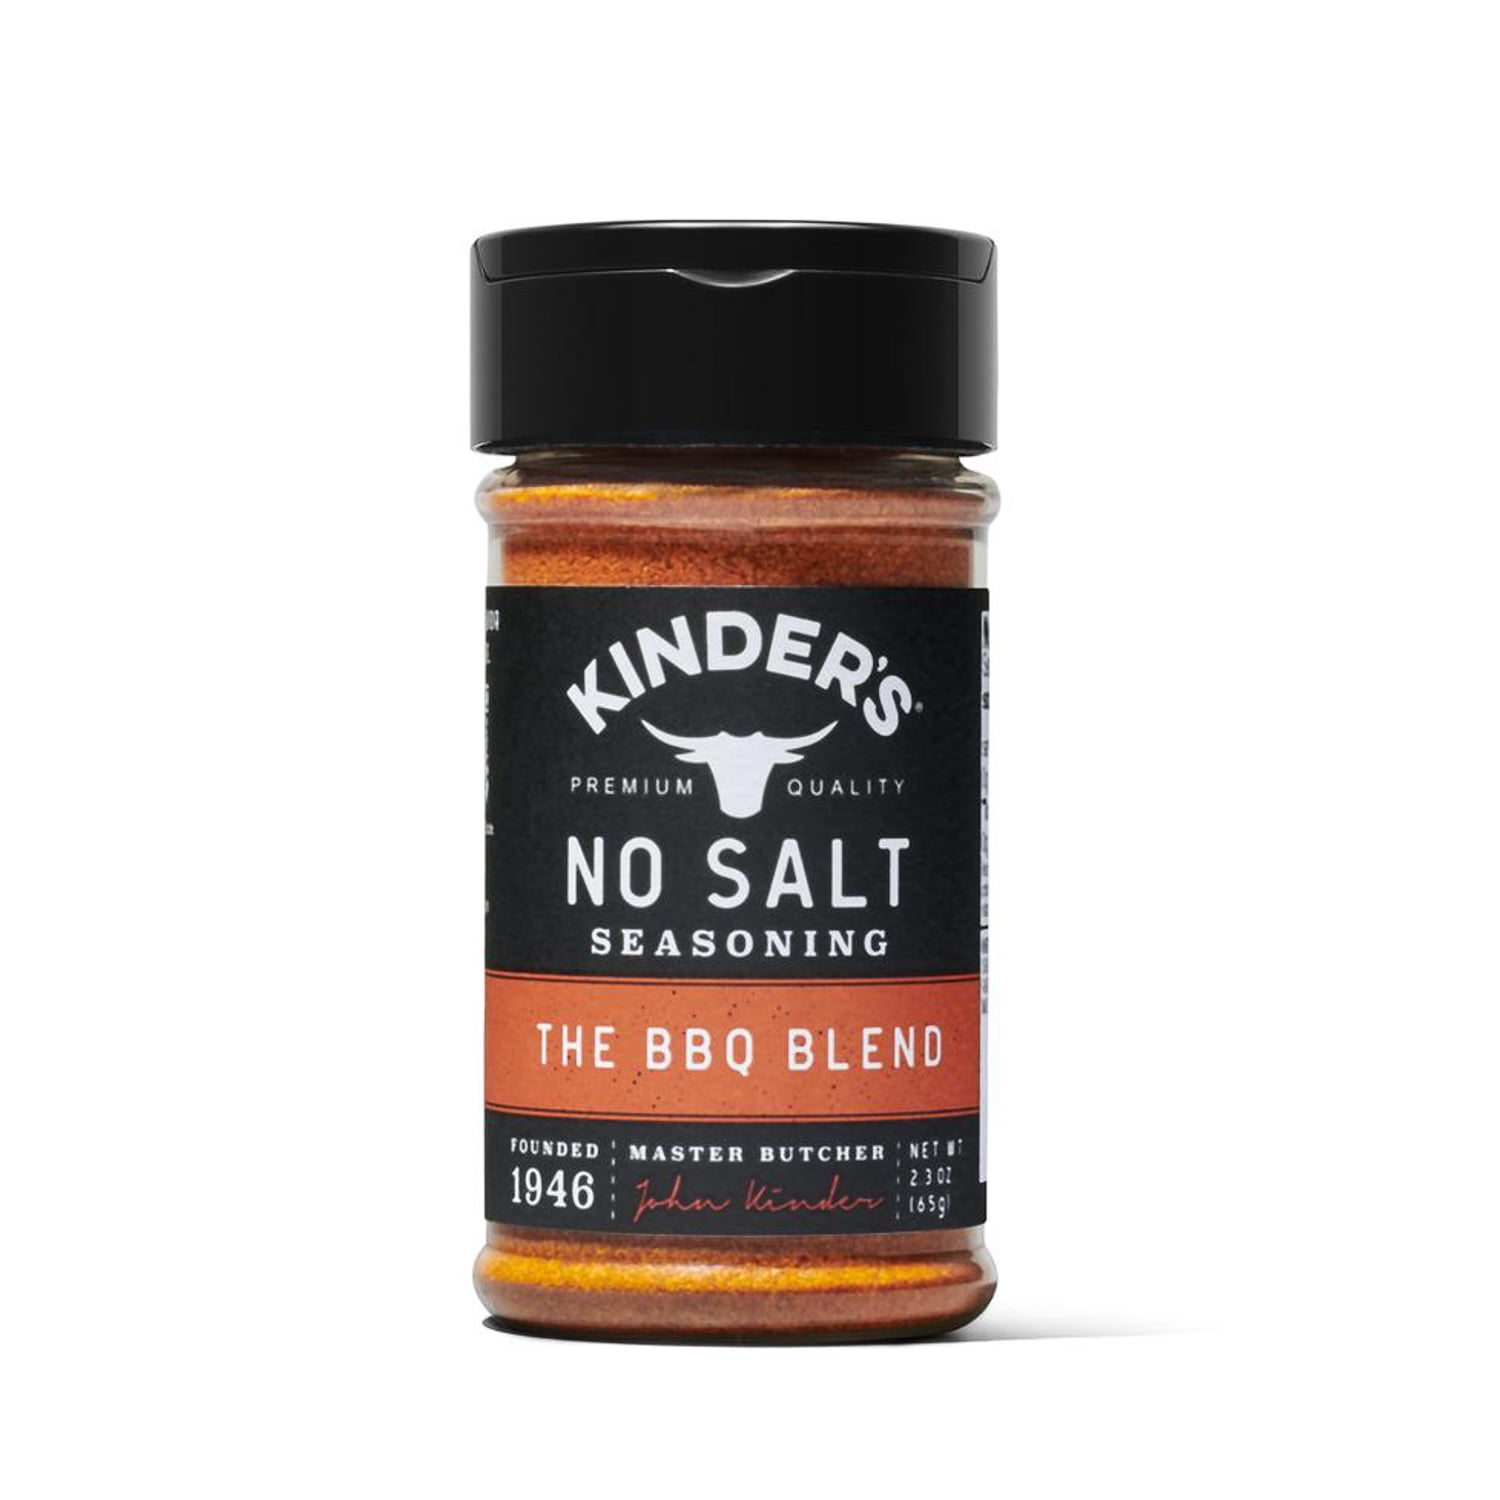 Kinder's No Salt Seasoning Sampler